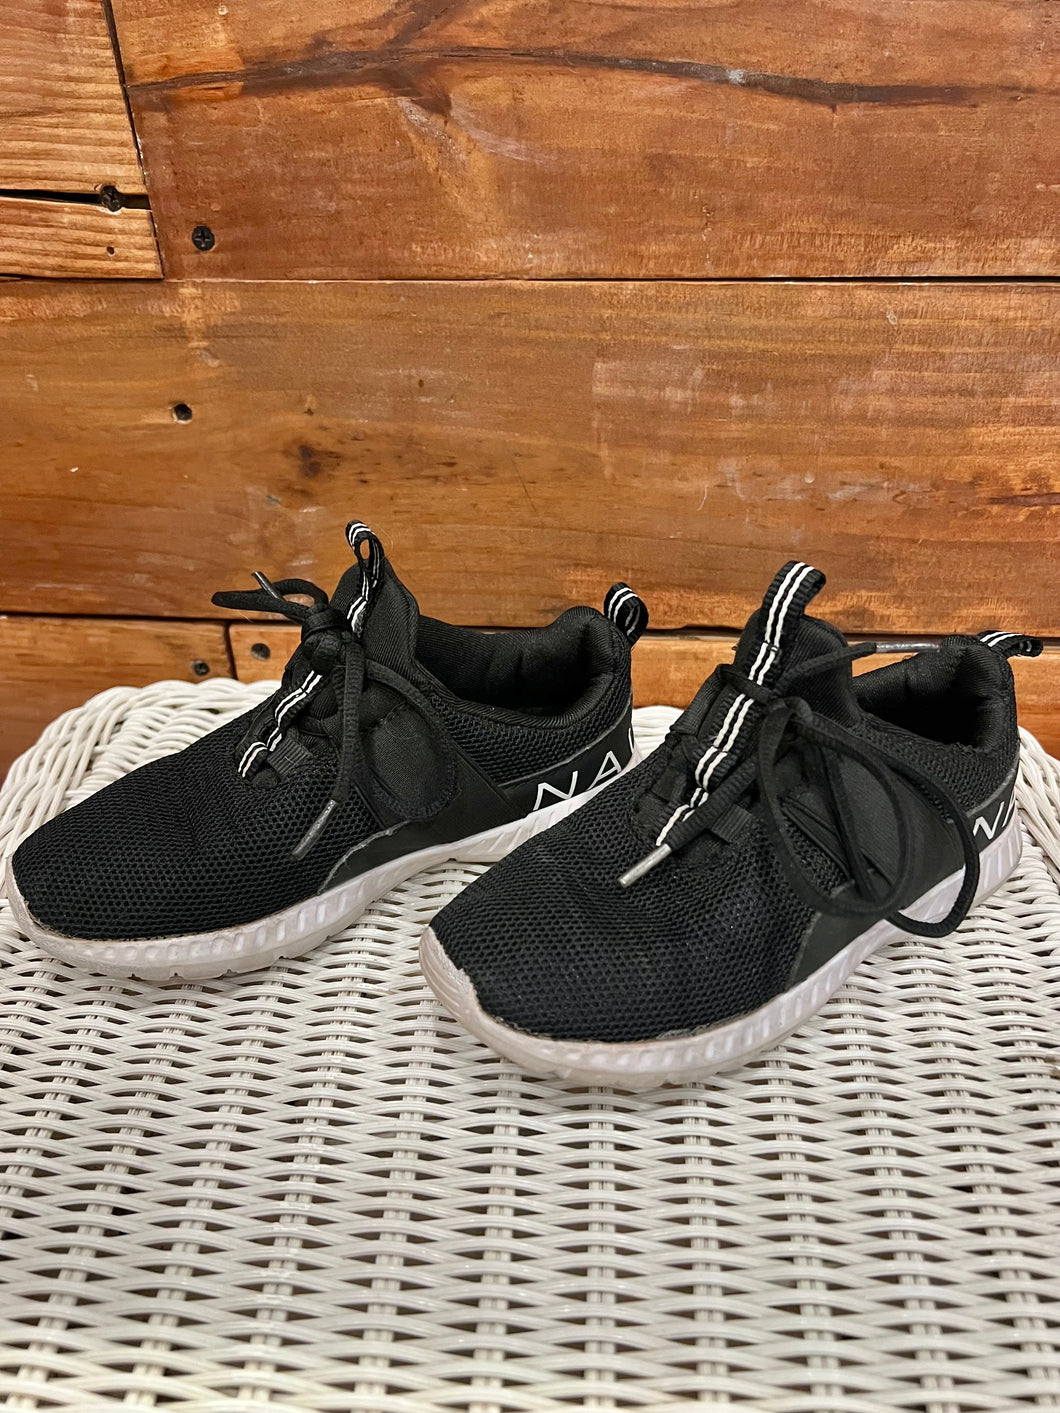 Nautica Black Shoes Size 13